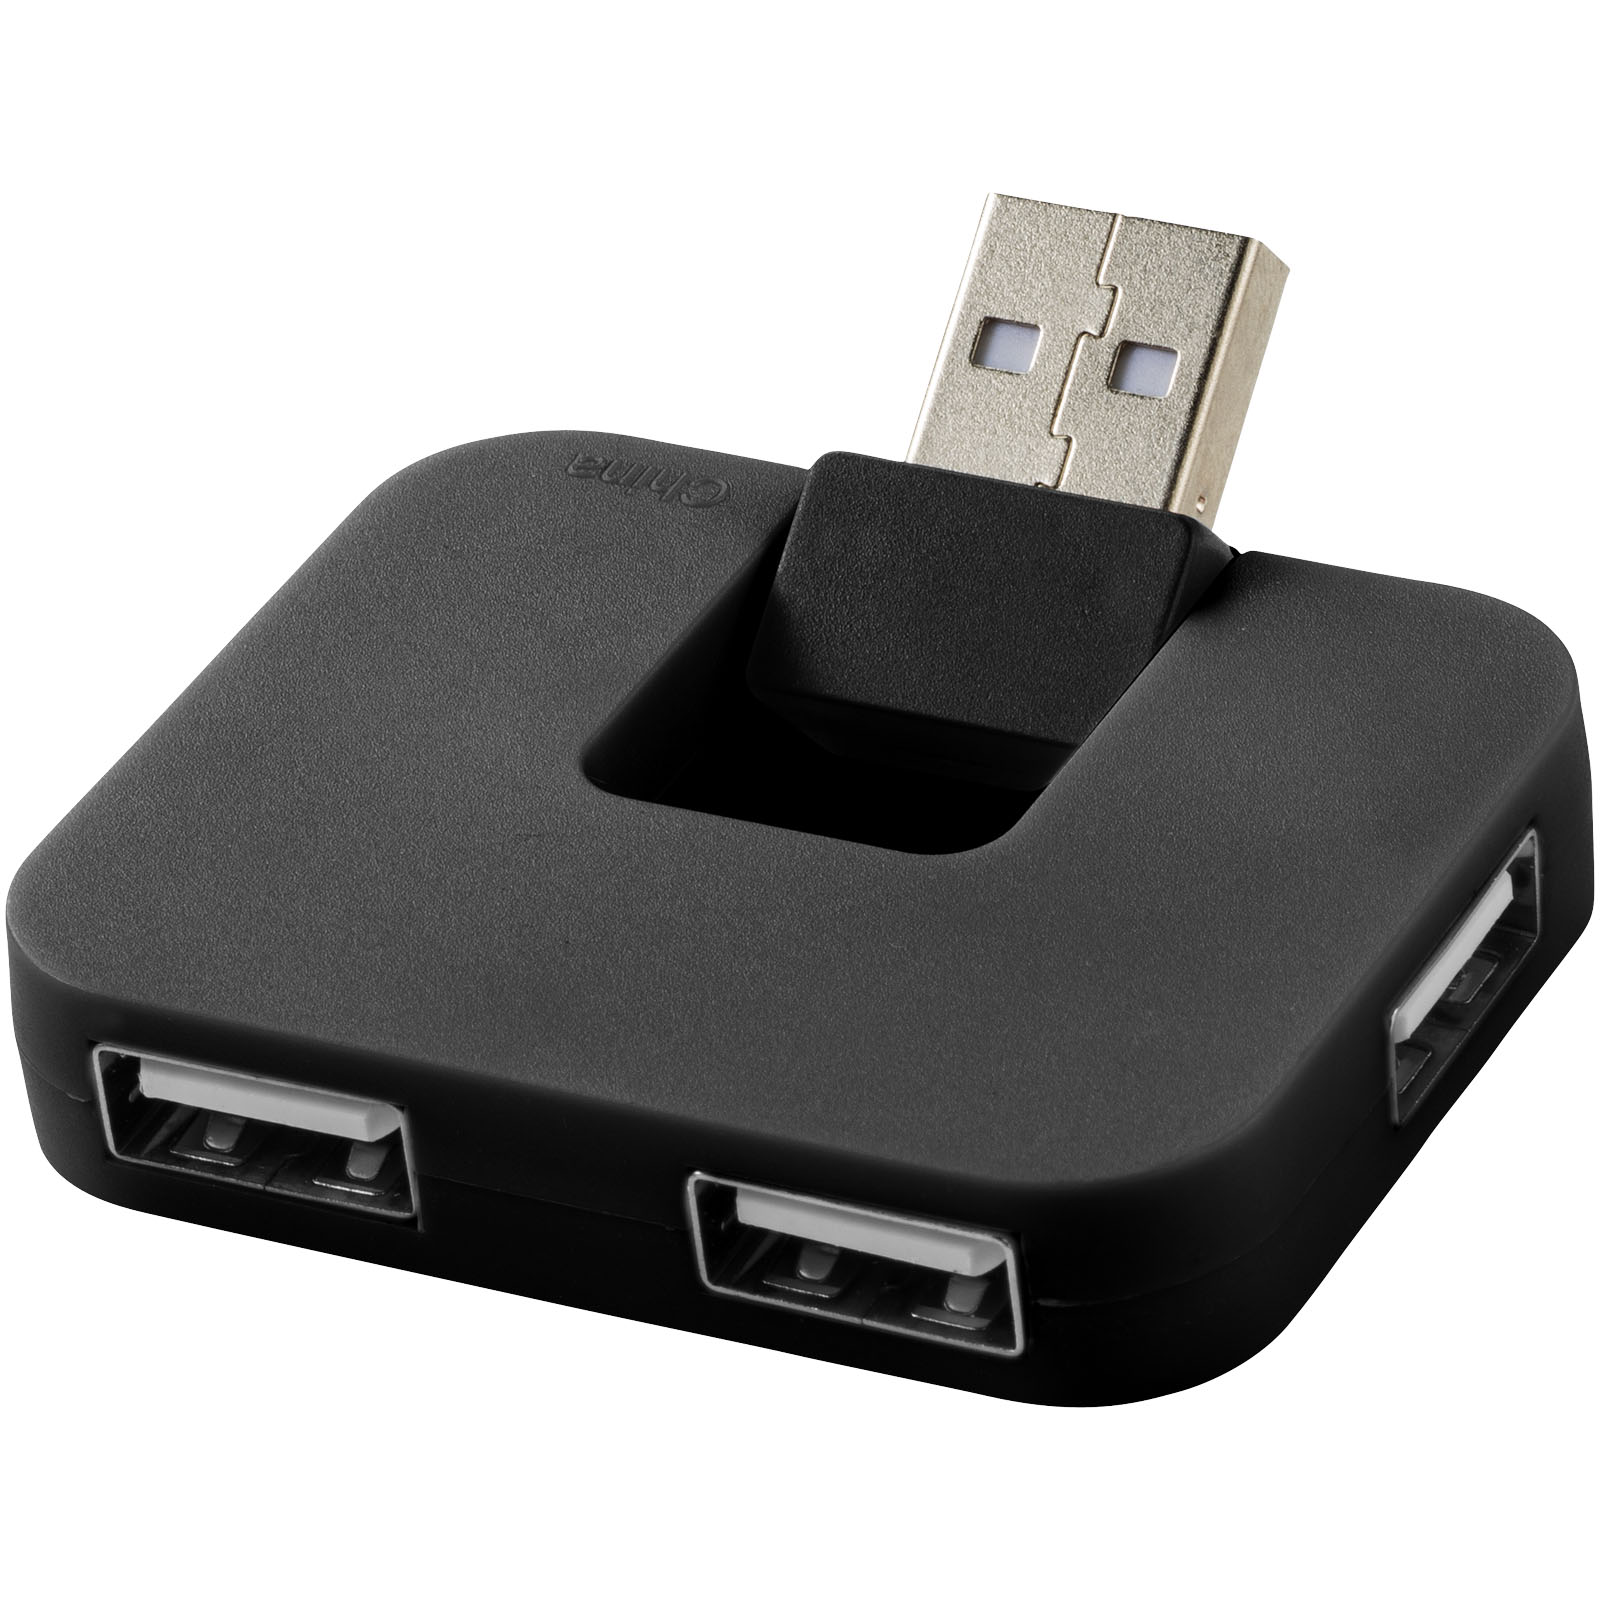 Hubs USB publicitaires - Hub USB 4 ports Gaia - 0